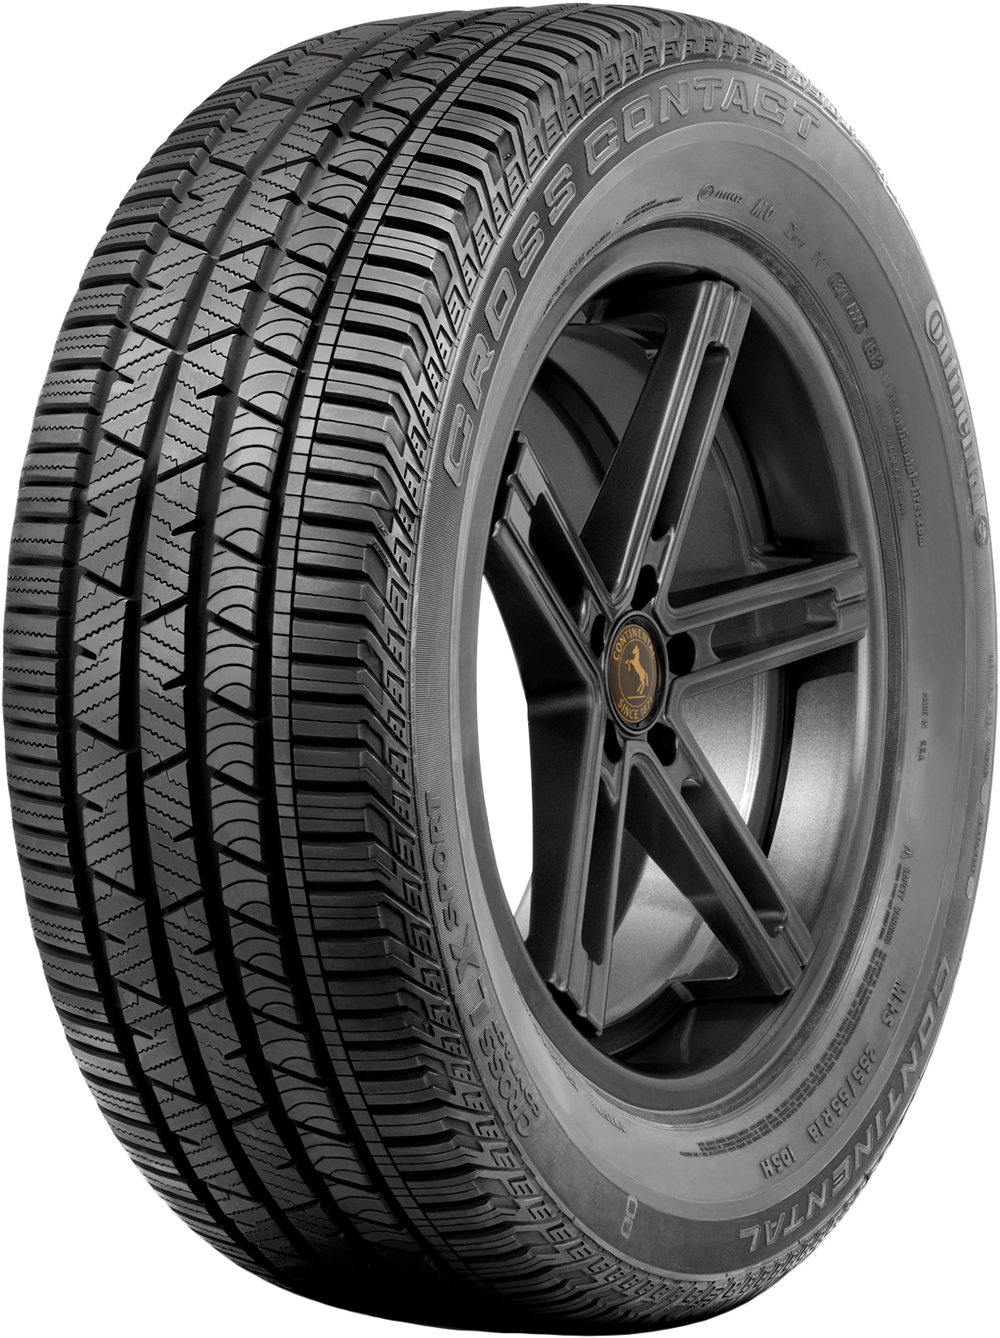 Автомобилни гуми CONTINENTAL CROSSCONTACT LX SP AUDI FP 235/60 R18 103H